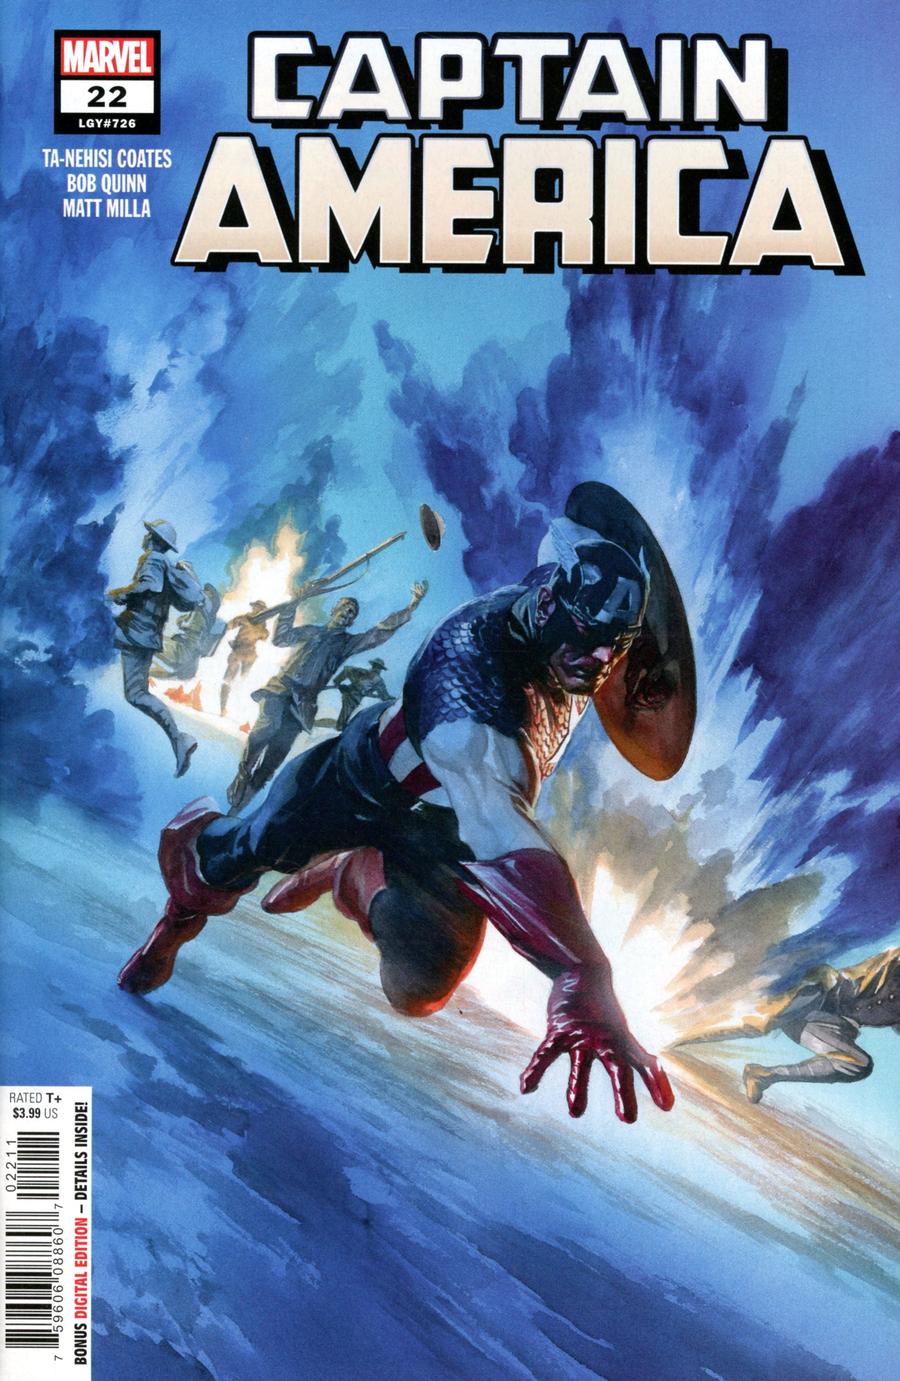 Captain America Vol 9 #22 comic book cover